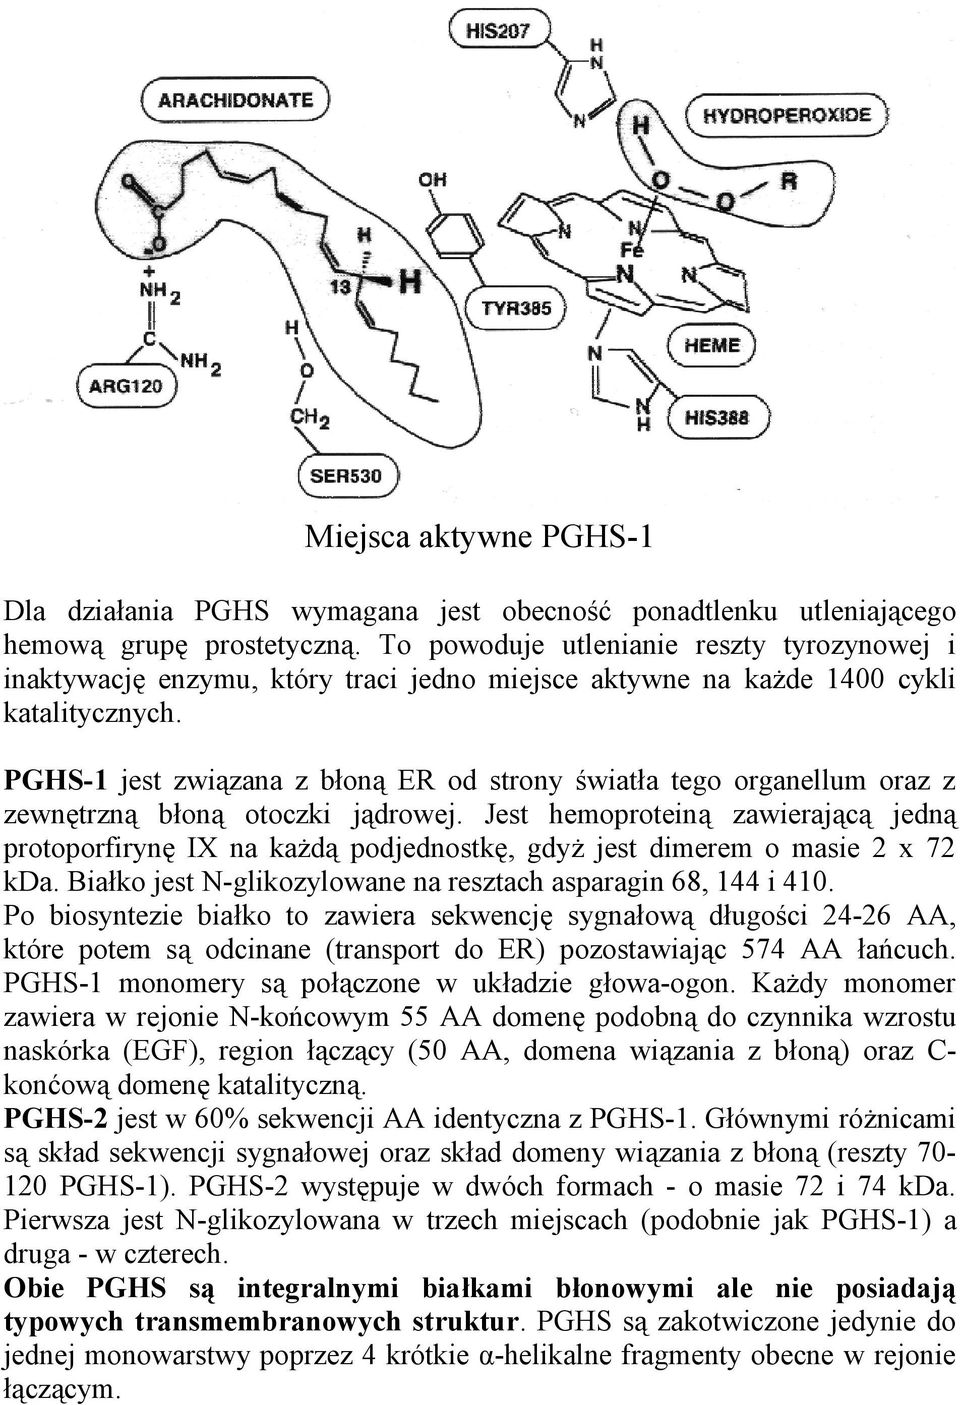 PGHS-1 jest związana z błoną ER od strony światła tego organellum oraz z zewnętrzną błoną otoczki jądrowej.